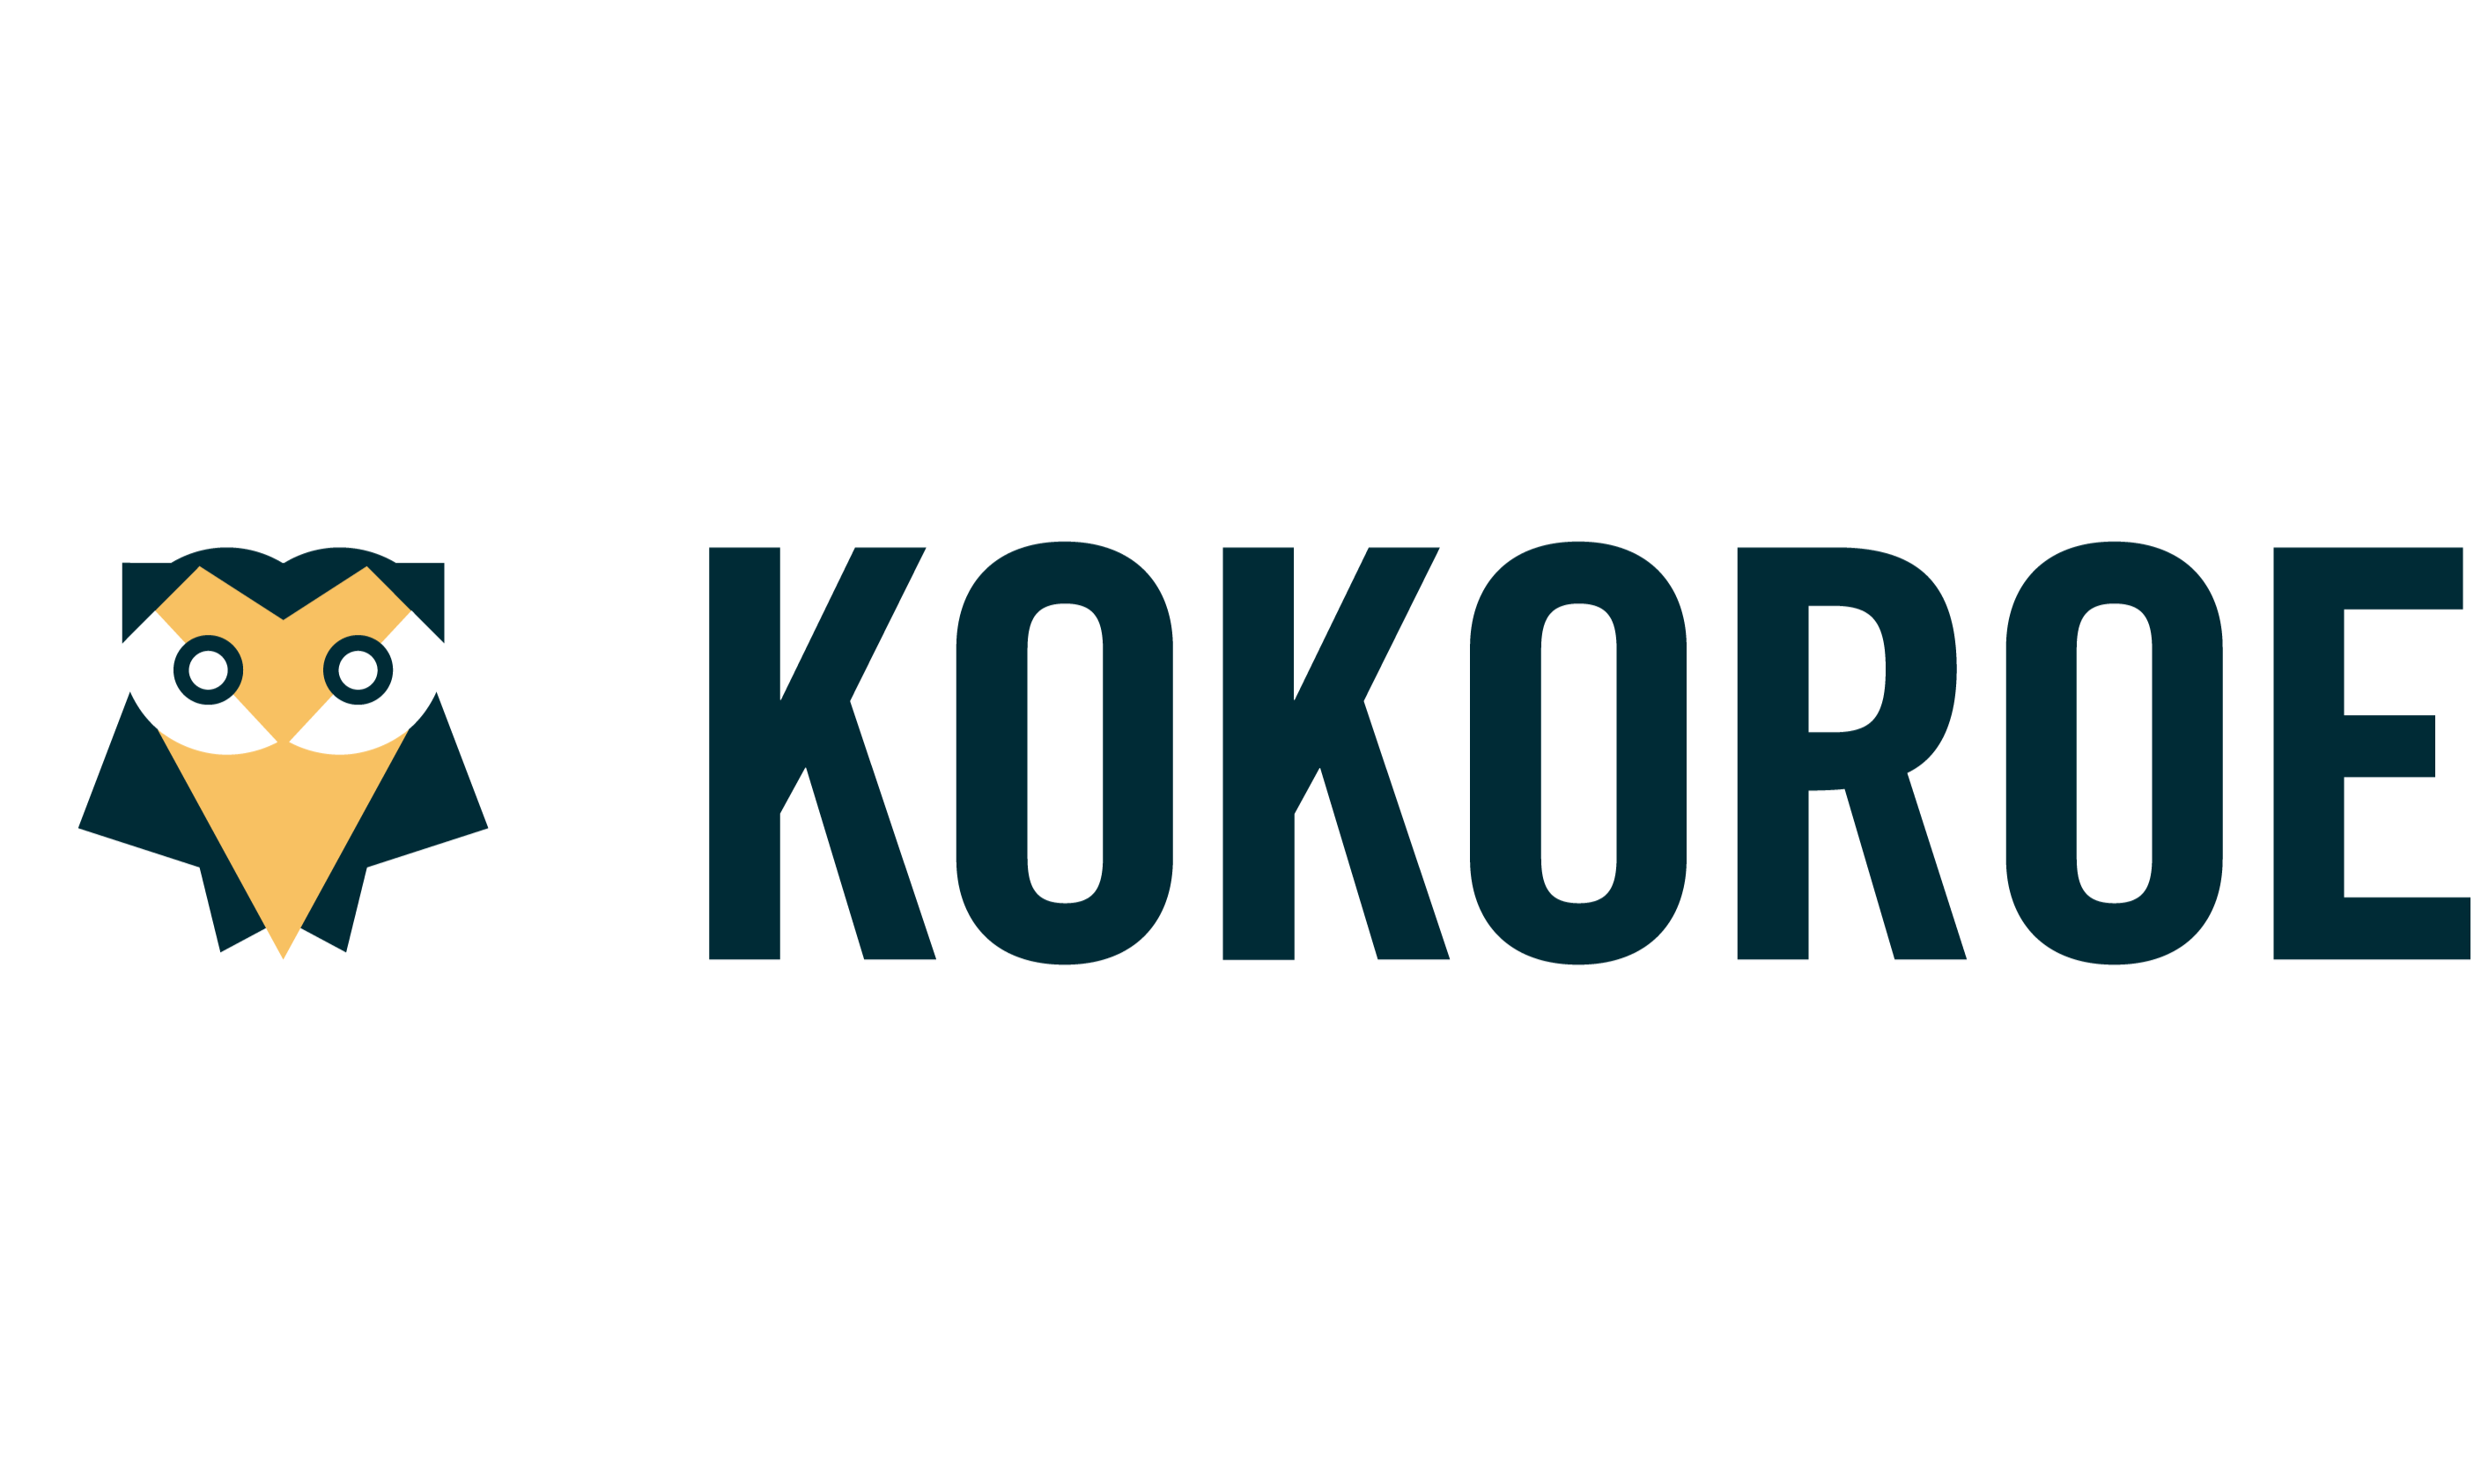 Kokoroe (logo)